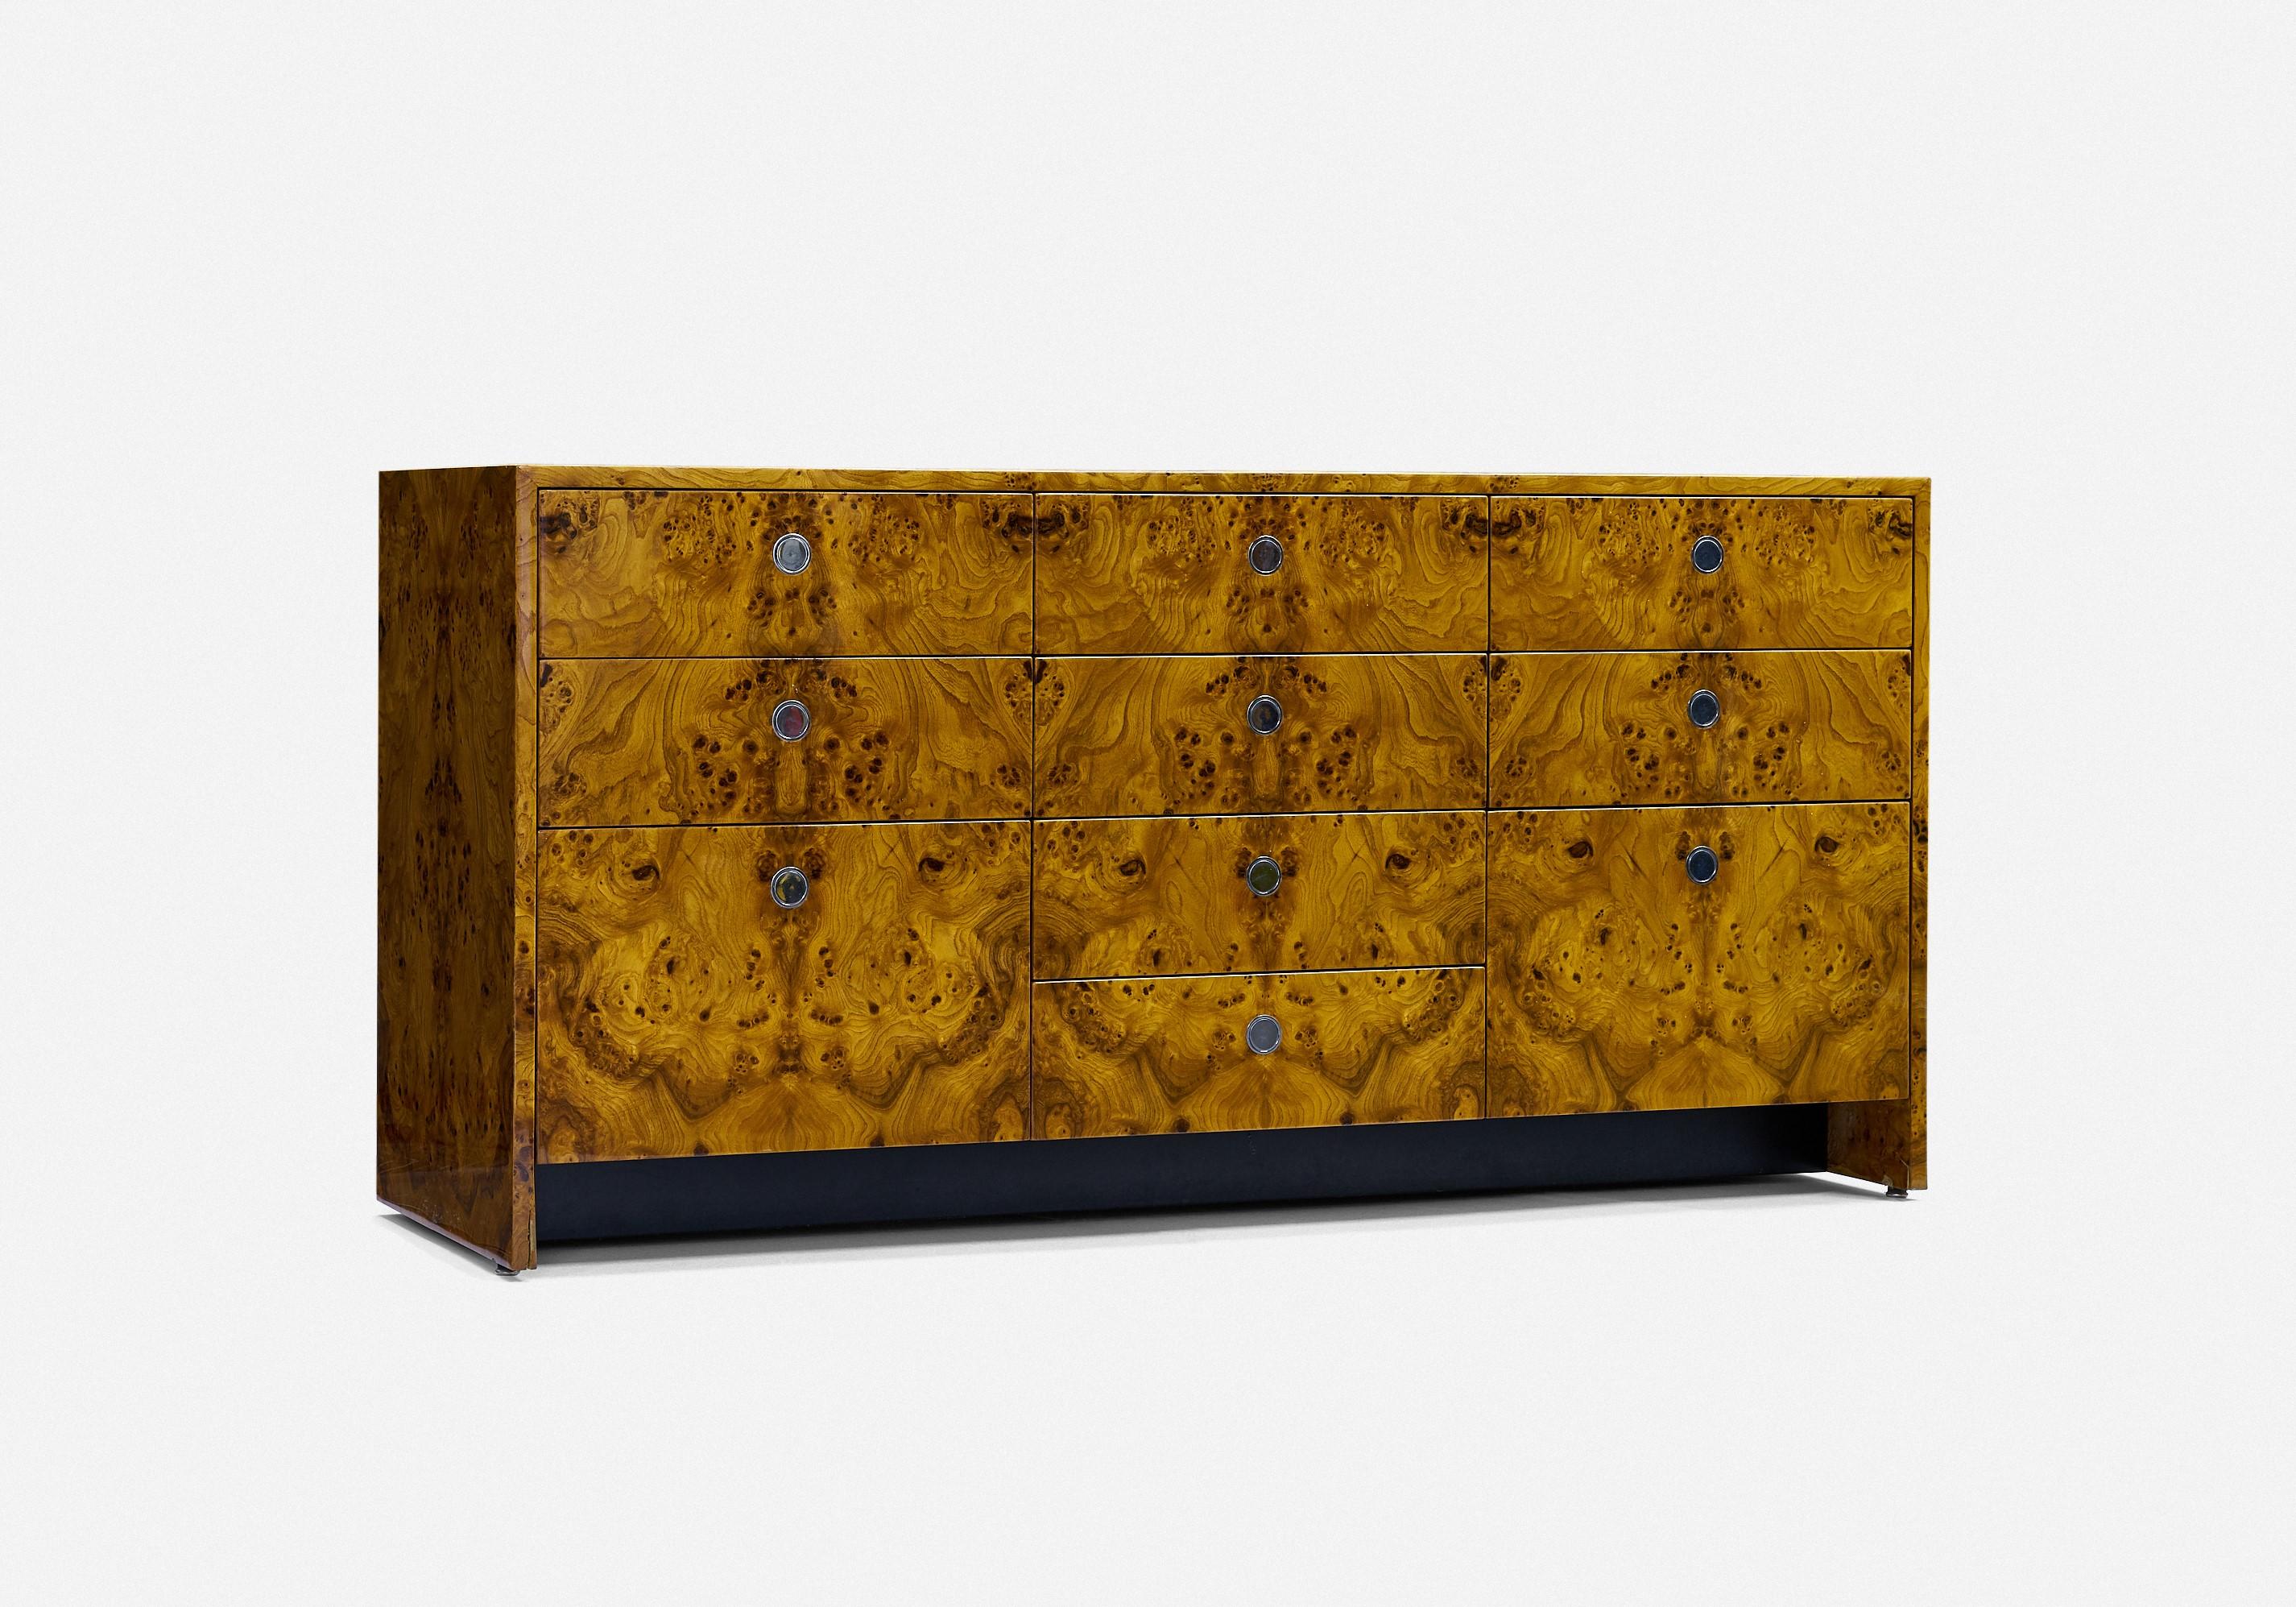 Ward Bennett
neun-Schubladen-Schrank

Brickell-Möbel
wurzelholz
USA ca. 1960er Jahre 

Neun-Schubladen-Schrank mit eingelassenen verchromten Ringgriffen, inklusive zwei Aktenschubladen, hochglänzende Polyurethan-Beschichtung, ohne